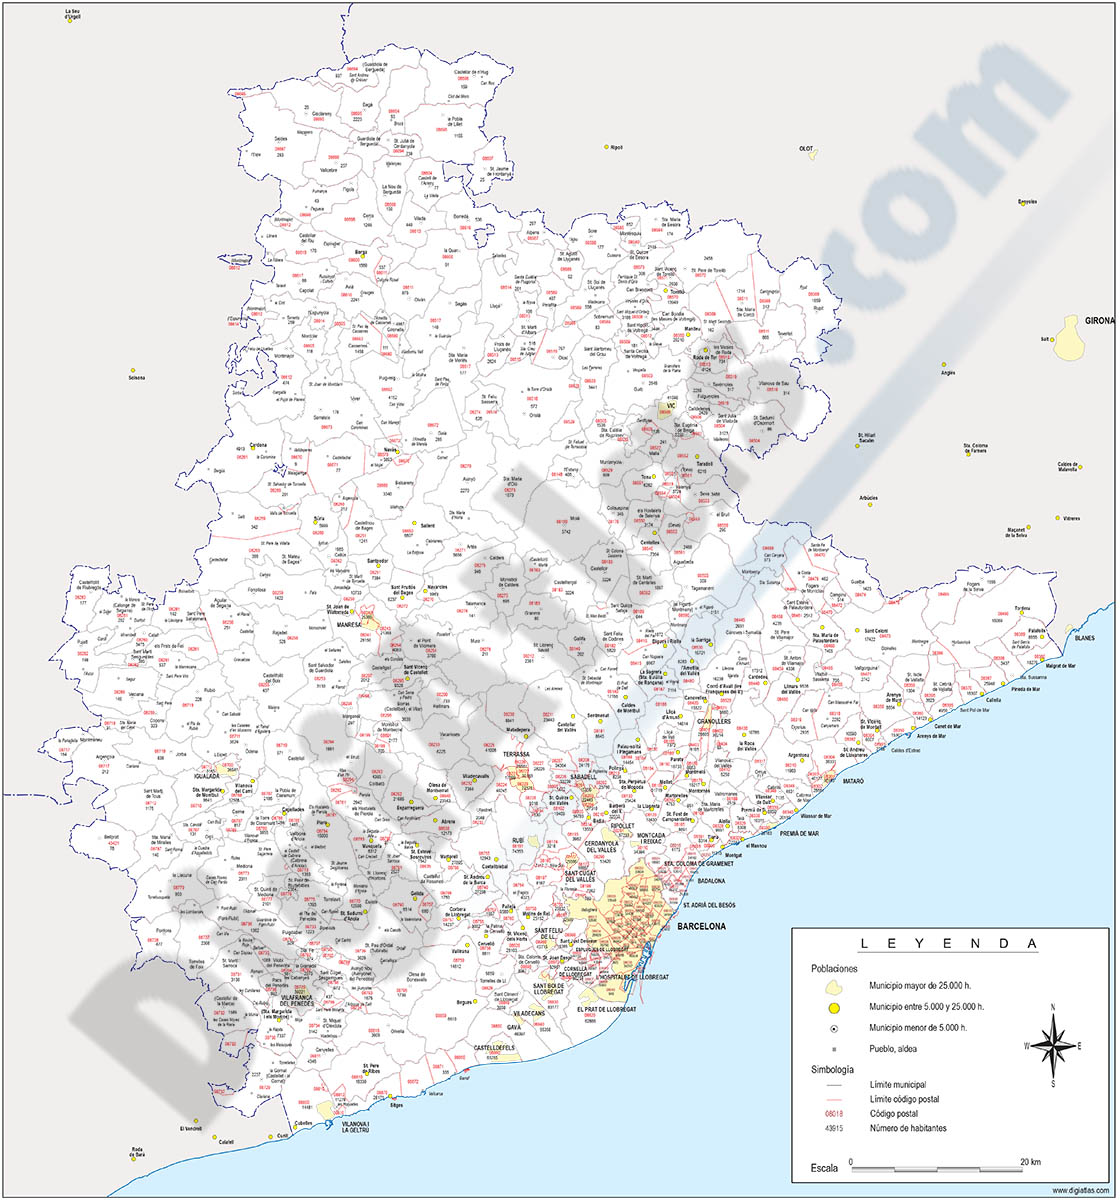 Barcelona - mapa provincial con municipios, códigos postales y habitantes